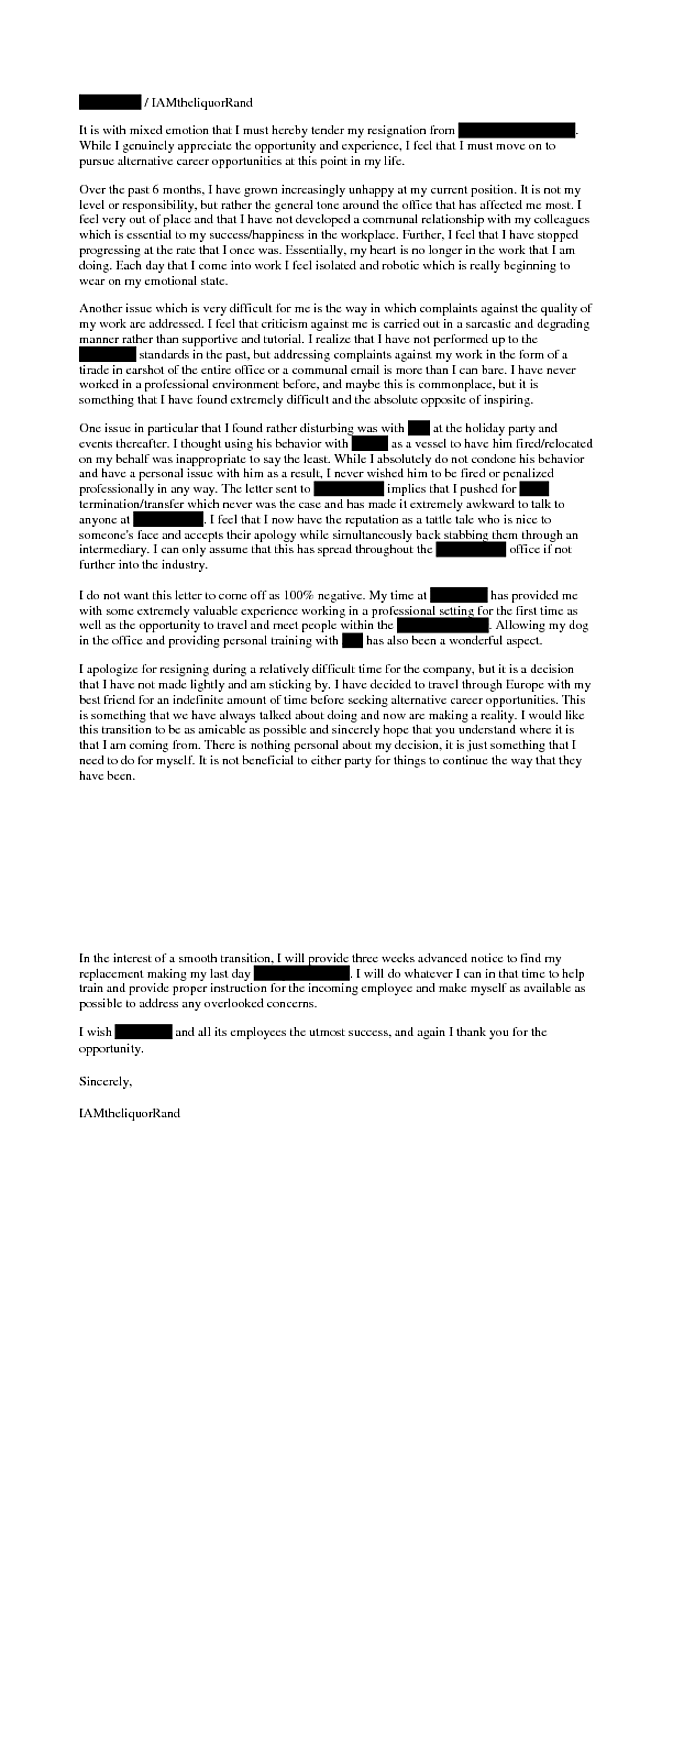 Resignation Letter Examples Reddit - Sample Resignation Letter